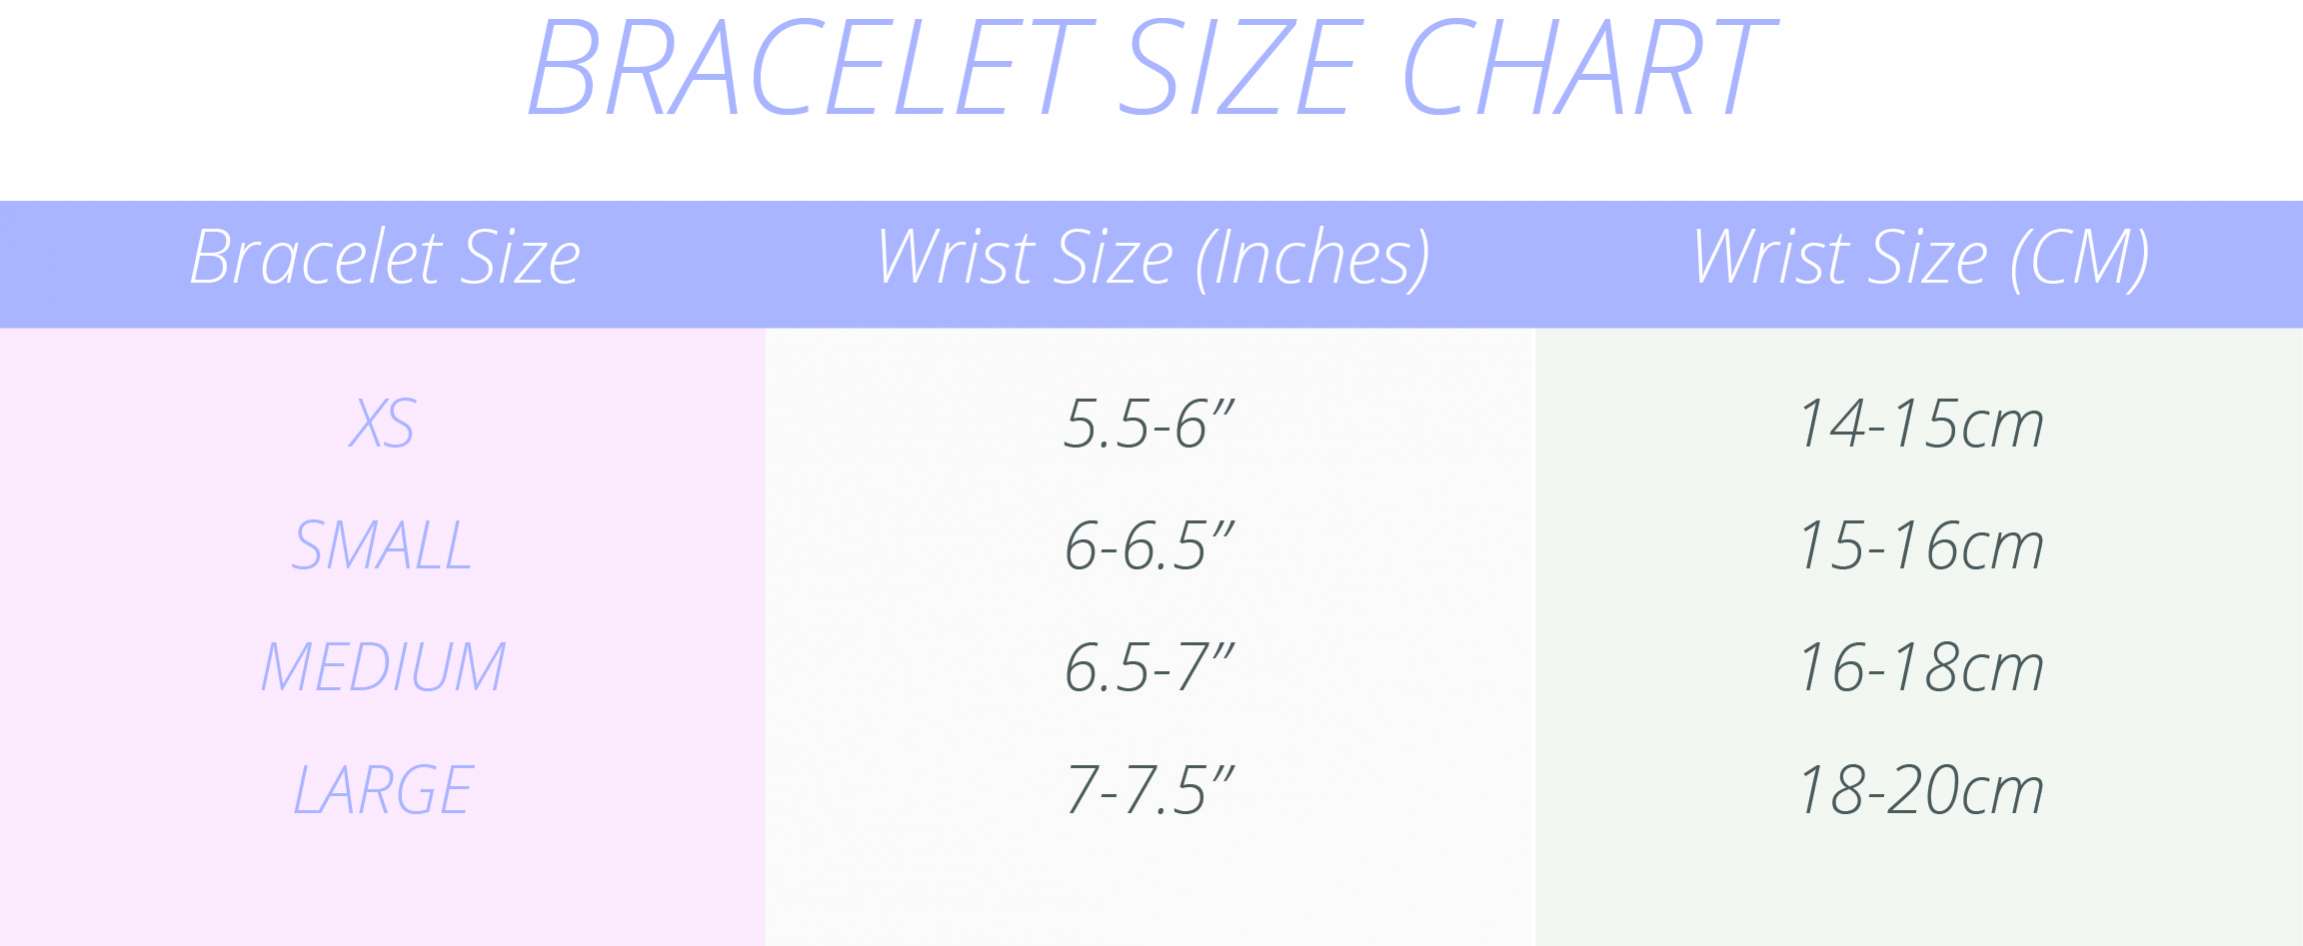 Bracelets Size Guide